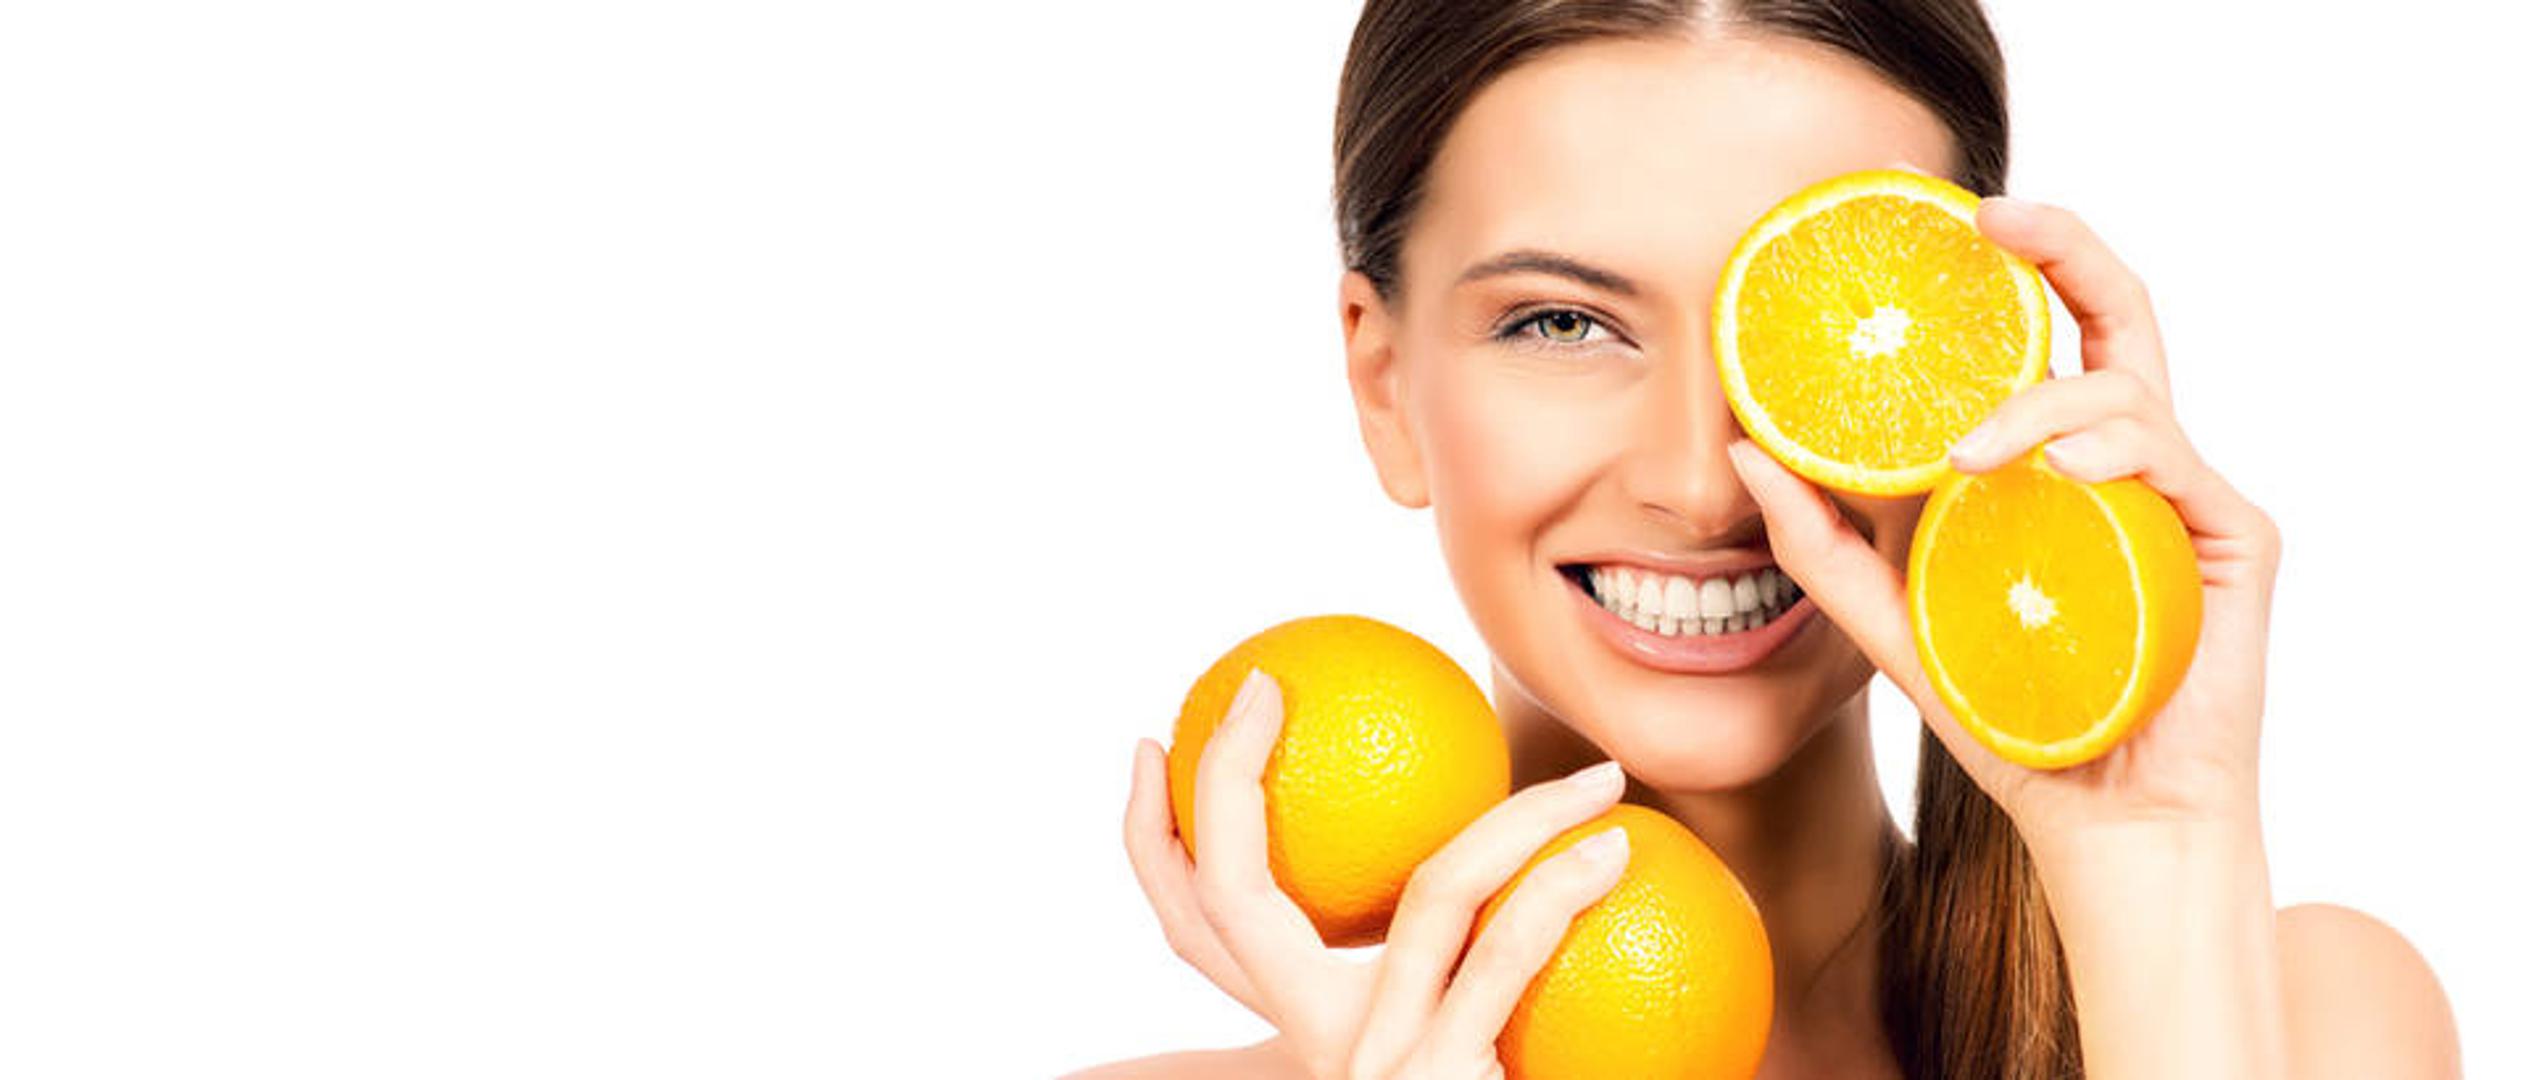 Naranče - Obiluju vitaminom C, kao i drugi agrumi, a ako želite izgubiti neželjene kilograme, radije pojedite naranču, umjesto da cijedite sok. 